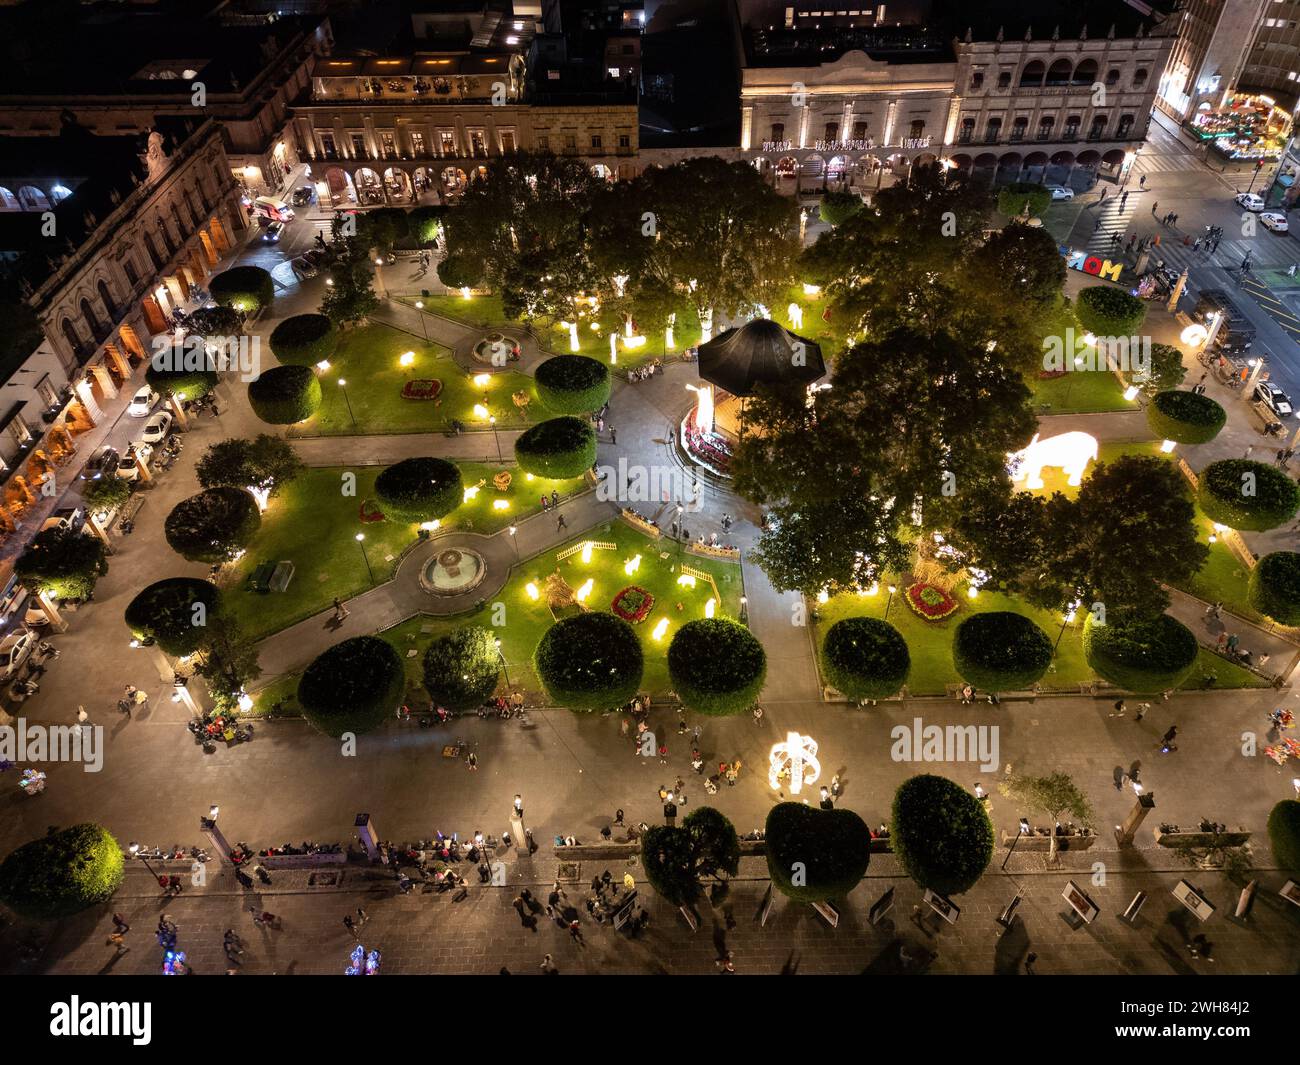 Vue aérienne nocturne de la place principale animée de Morelia avec son kiosque central et les visiteurs qui flânent, illuminés par des lumières chaudes. Banque D'Images